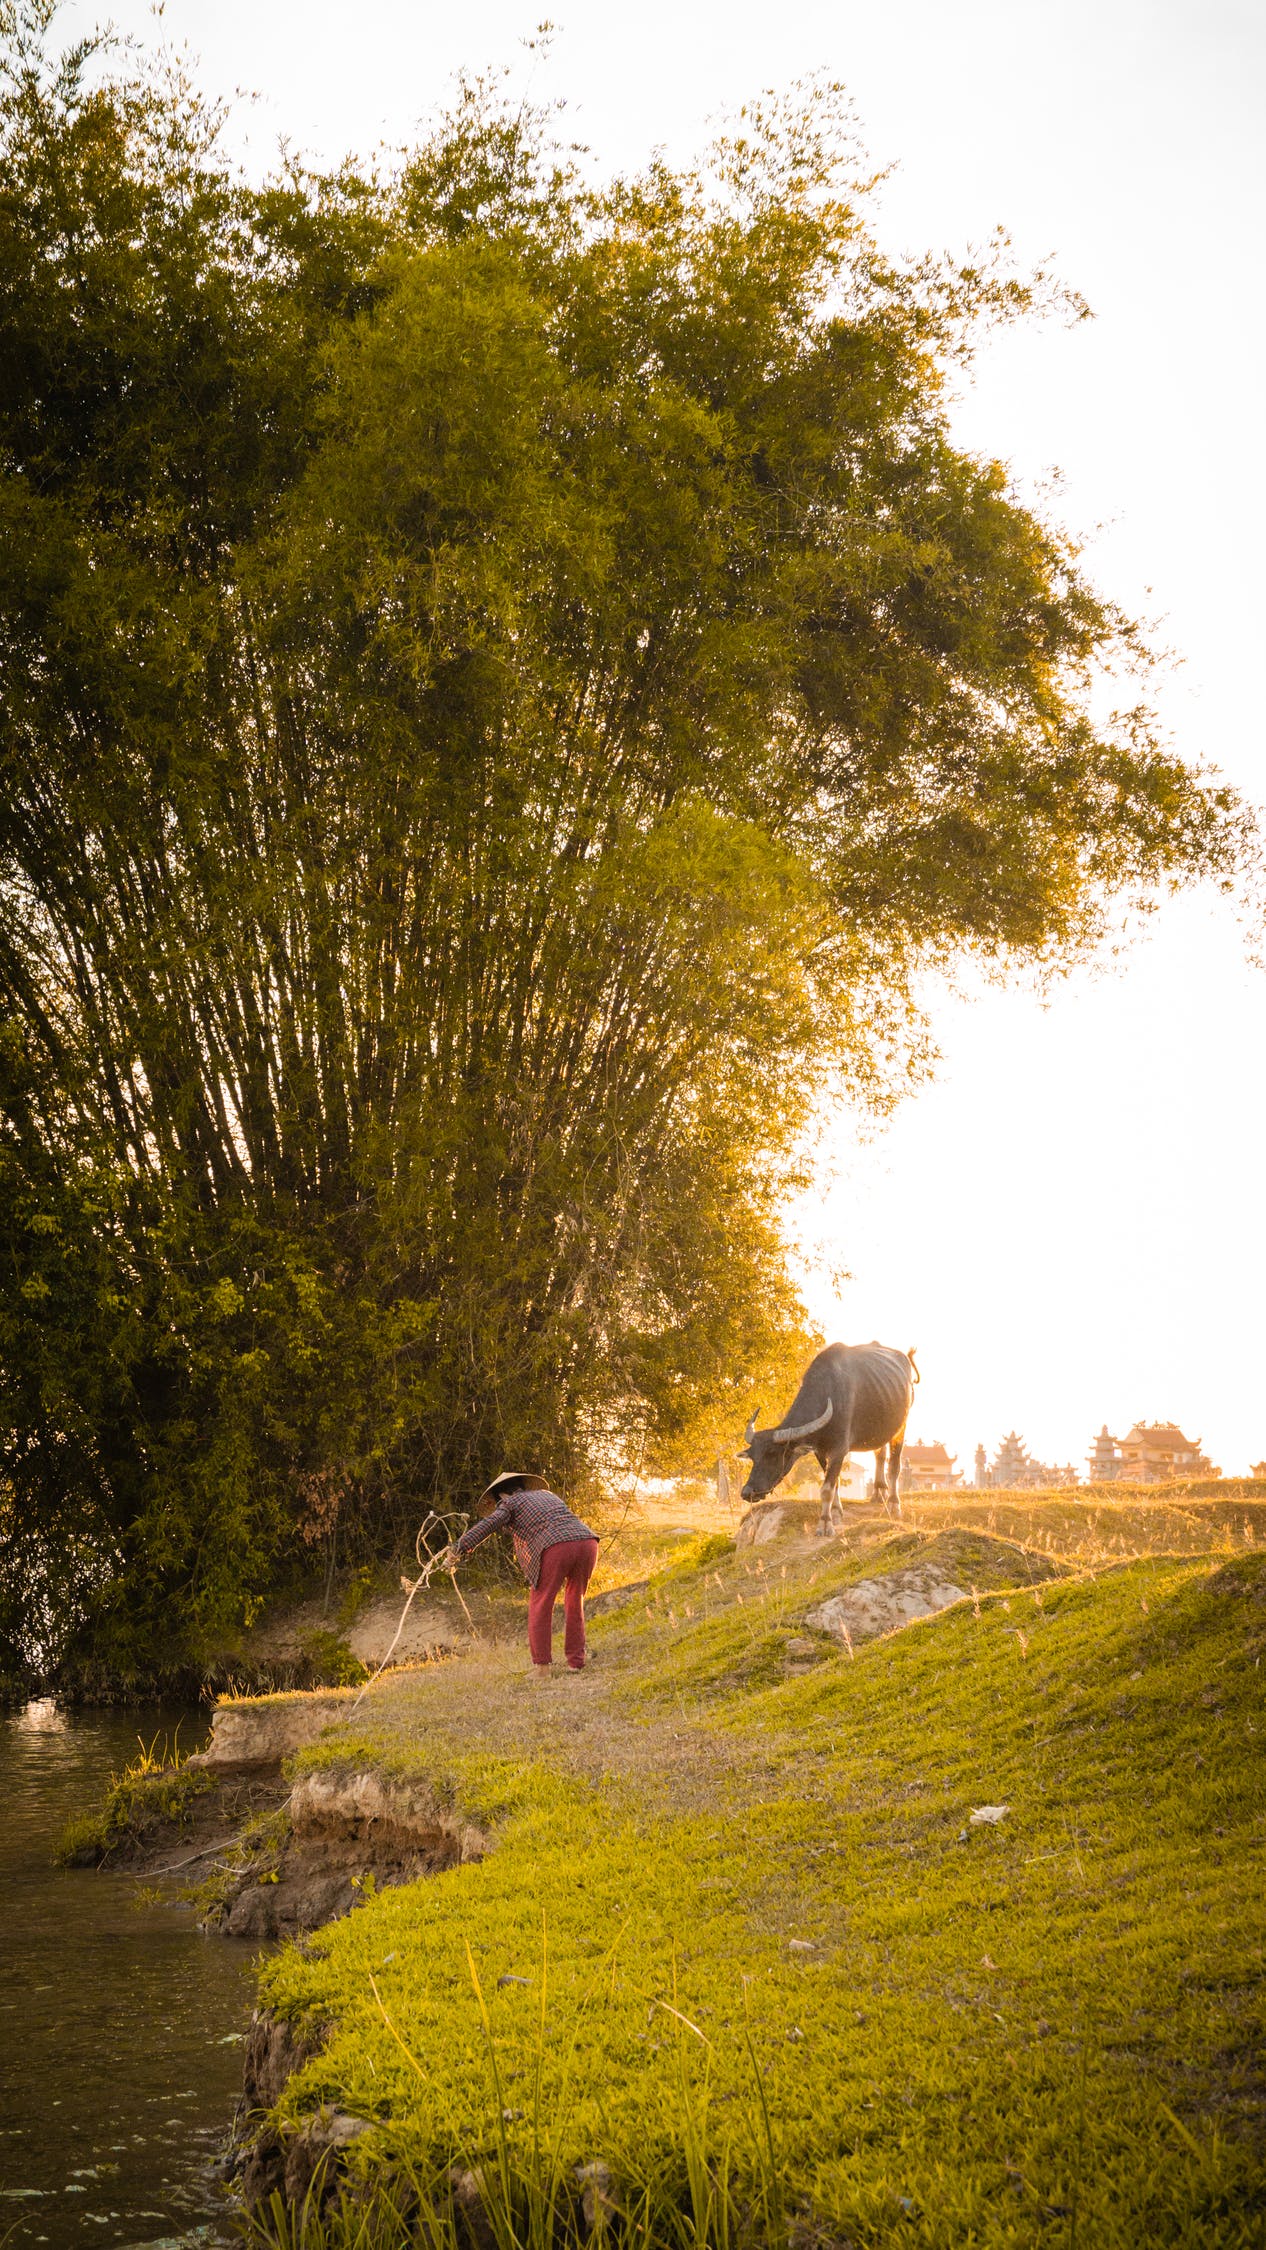 Làng quê Việt Nam là nơi bao gồm những cảnh quan đẹp nhất của đất nước. Những ngôi nhà cổ kính, đồng ruộng bát ngát, sông nước mênh mông và con người thân thiện chào đón du khách. Hãy cùng đến thăm và khám phá những bí ẩn của làng quê Việt Nam!